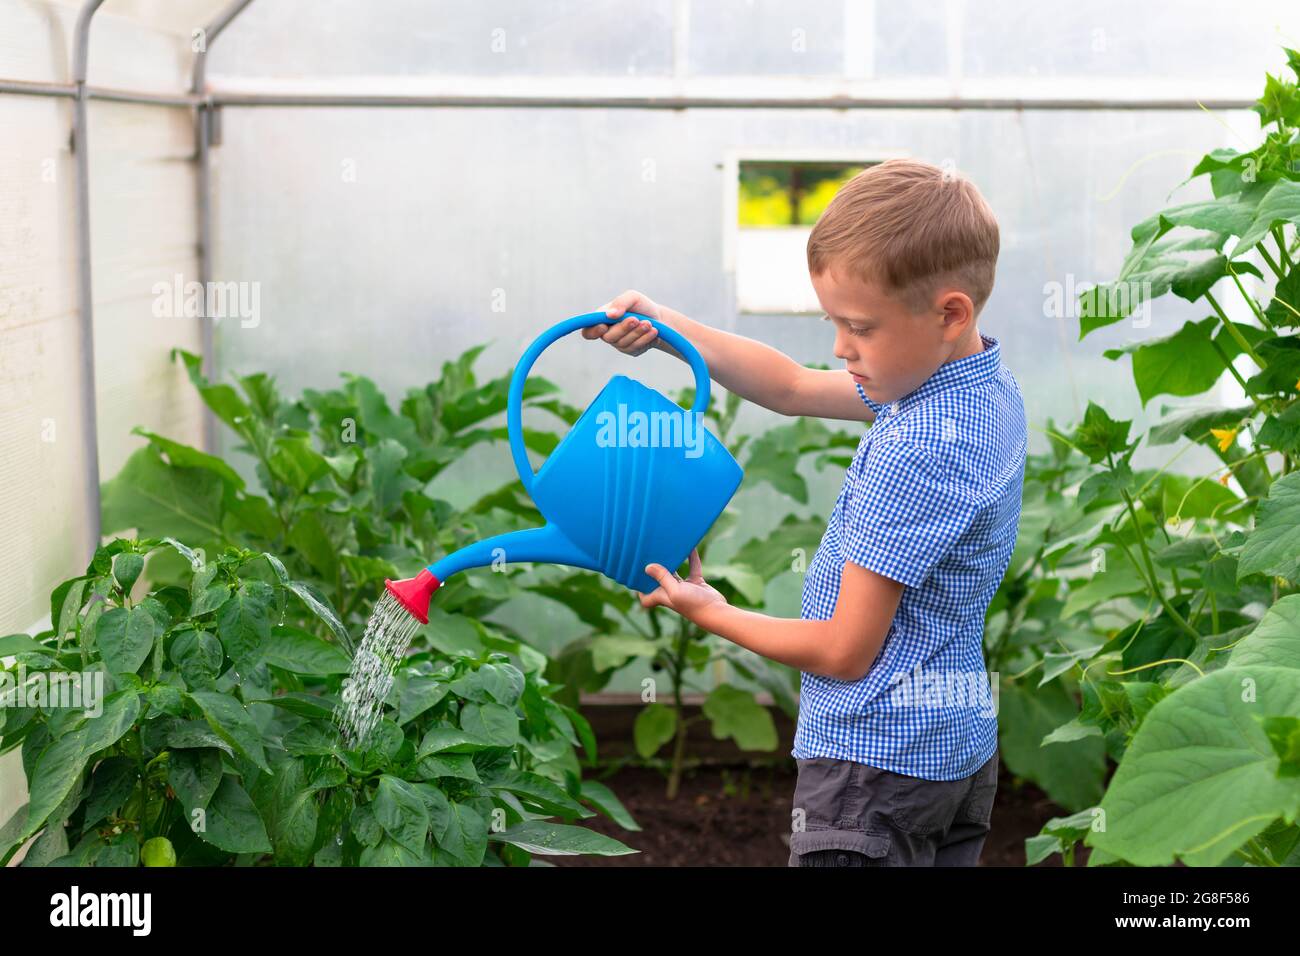 Ein Junge im Vorschulalter mit einer ordentlichen Frisur in einem blauen Hemd, das Gurken- und Tomatenpflanzen in einem Gewächshaus wässert. Selektiver Fokus. Hochformat Stockfoto